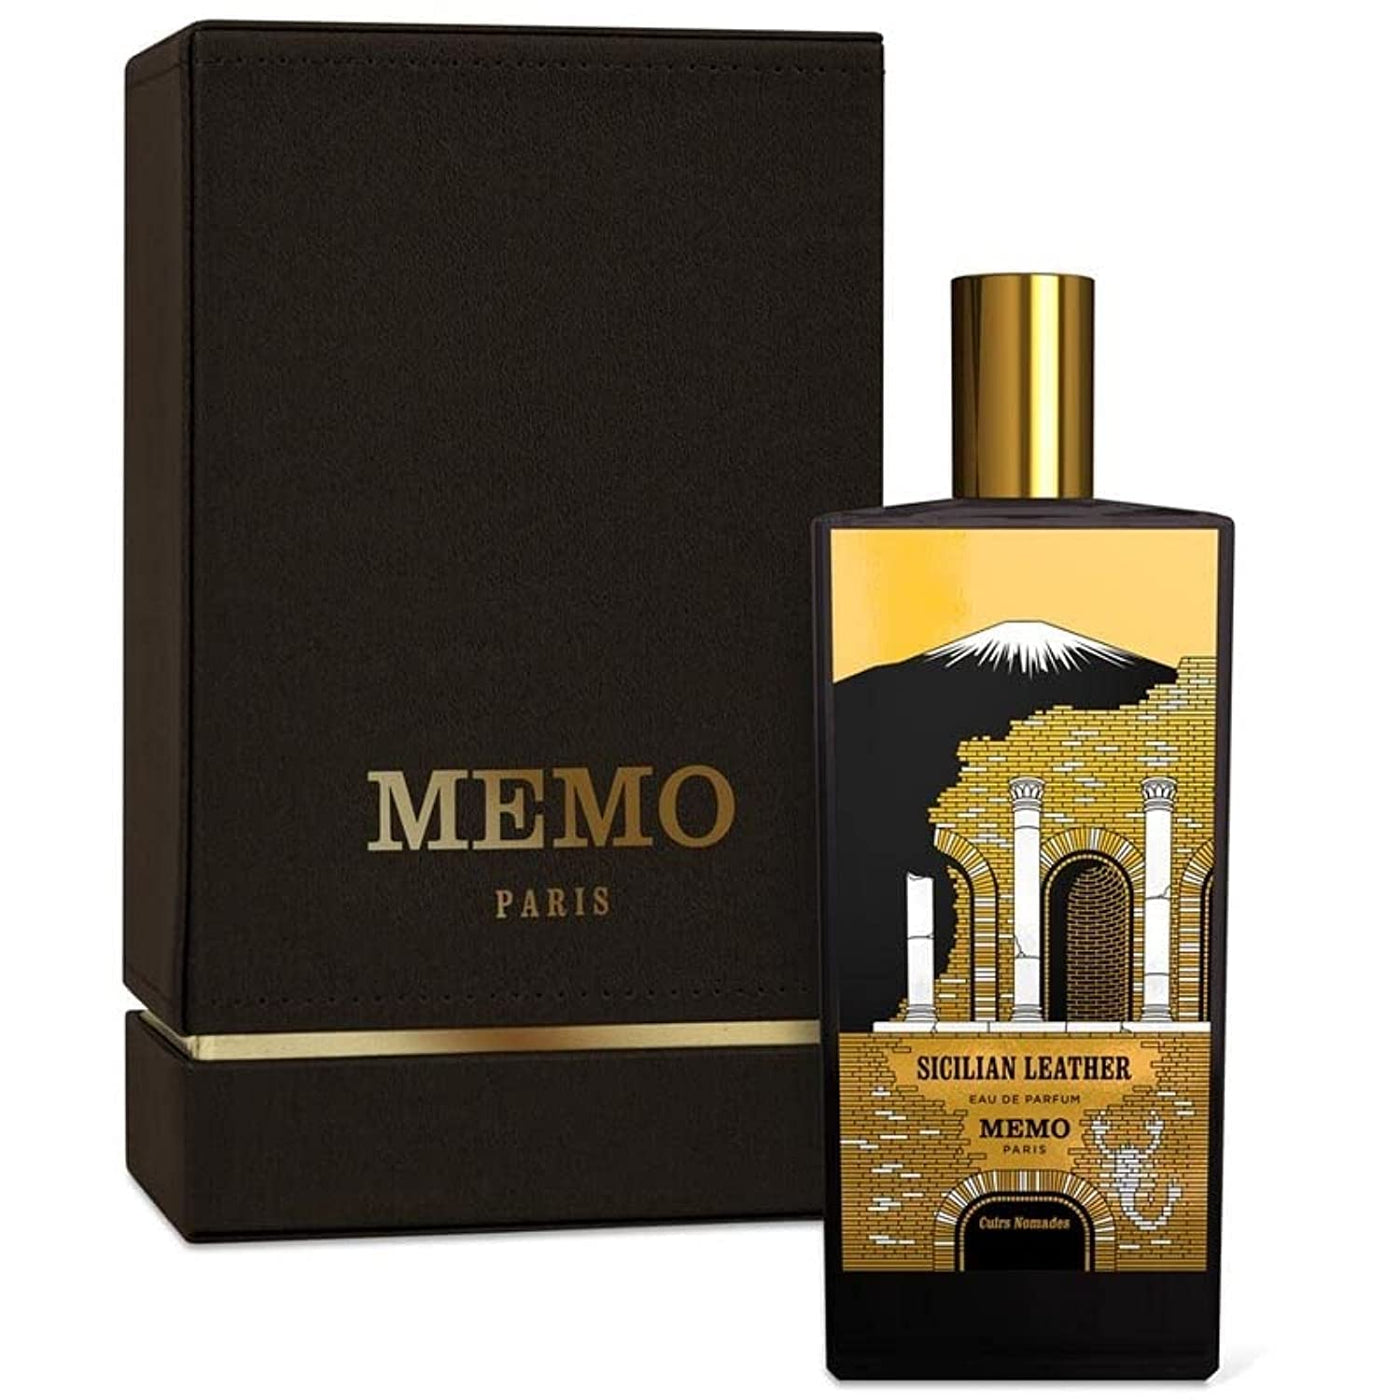 Memo Cuirs Nomades Sicilian Leather For Men And Women Eau De Parfum 75Ml